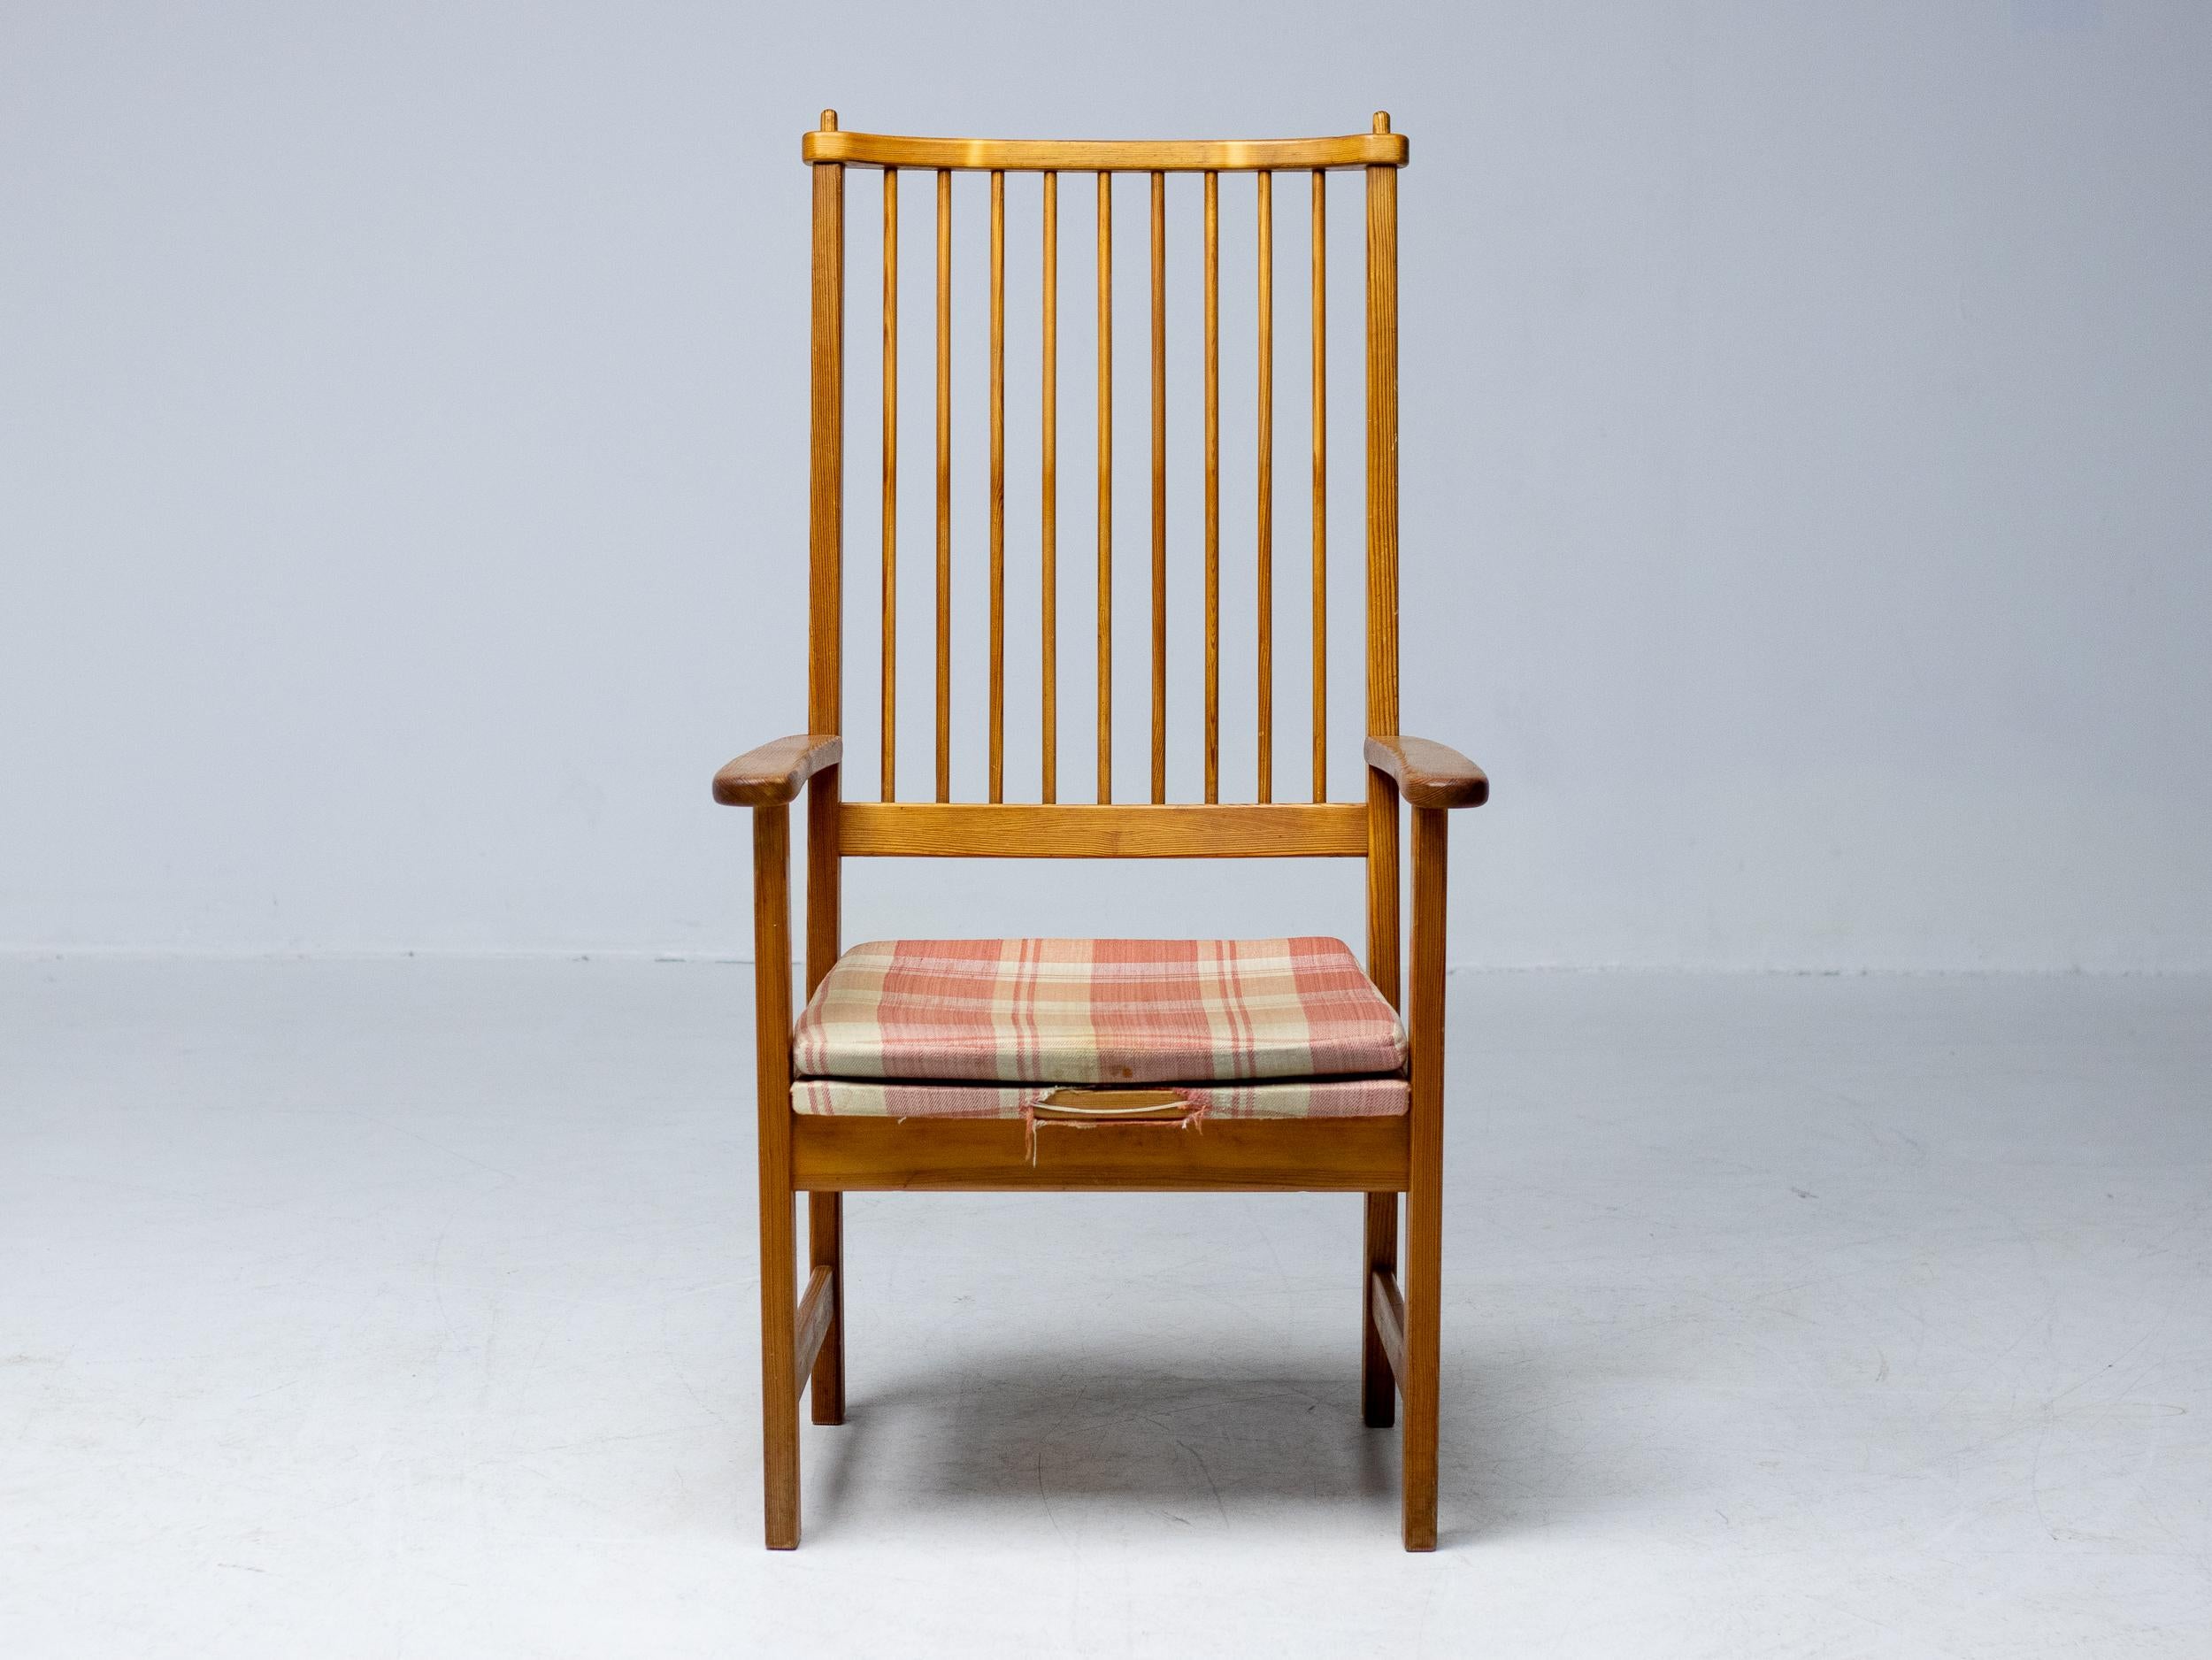 Der Gründer von Swedese, Yngve Ekström, war in den 1950er und 60er Jahren einer der führenden Möbeldesigner Schwedens. Die organische und schlichte Eleganz dieses Stuhls ist typisch für Ekströms Herangehensweise an das Möbeldesign, bei dem es vor